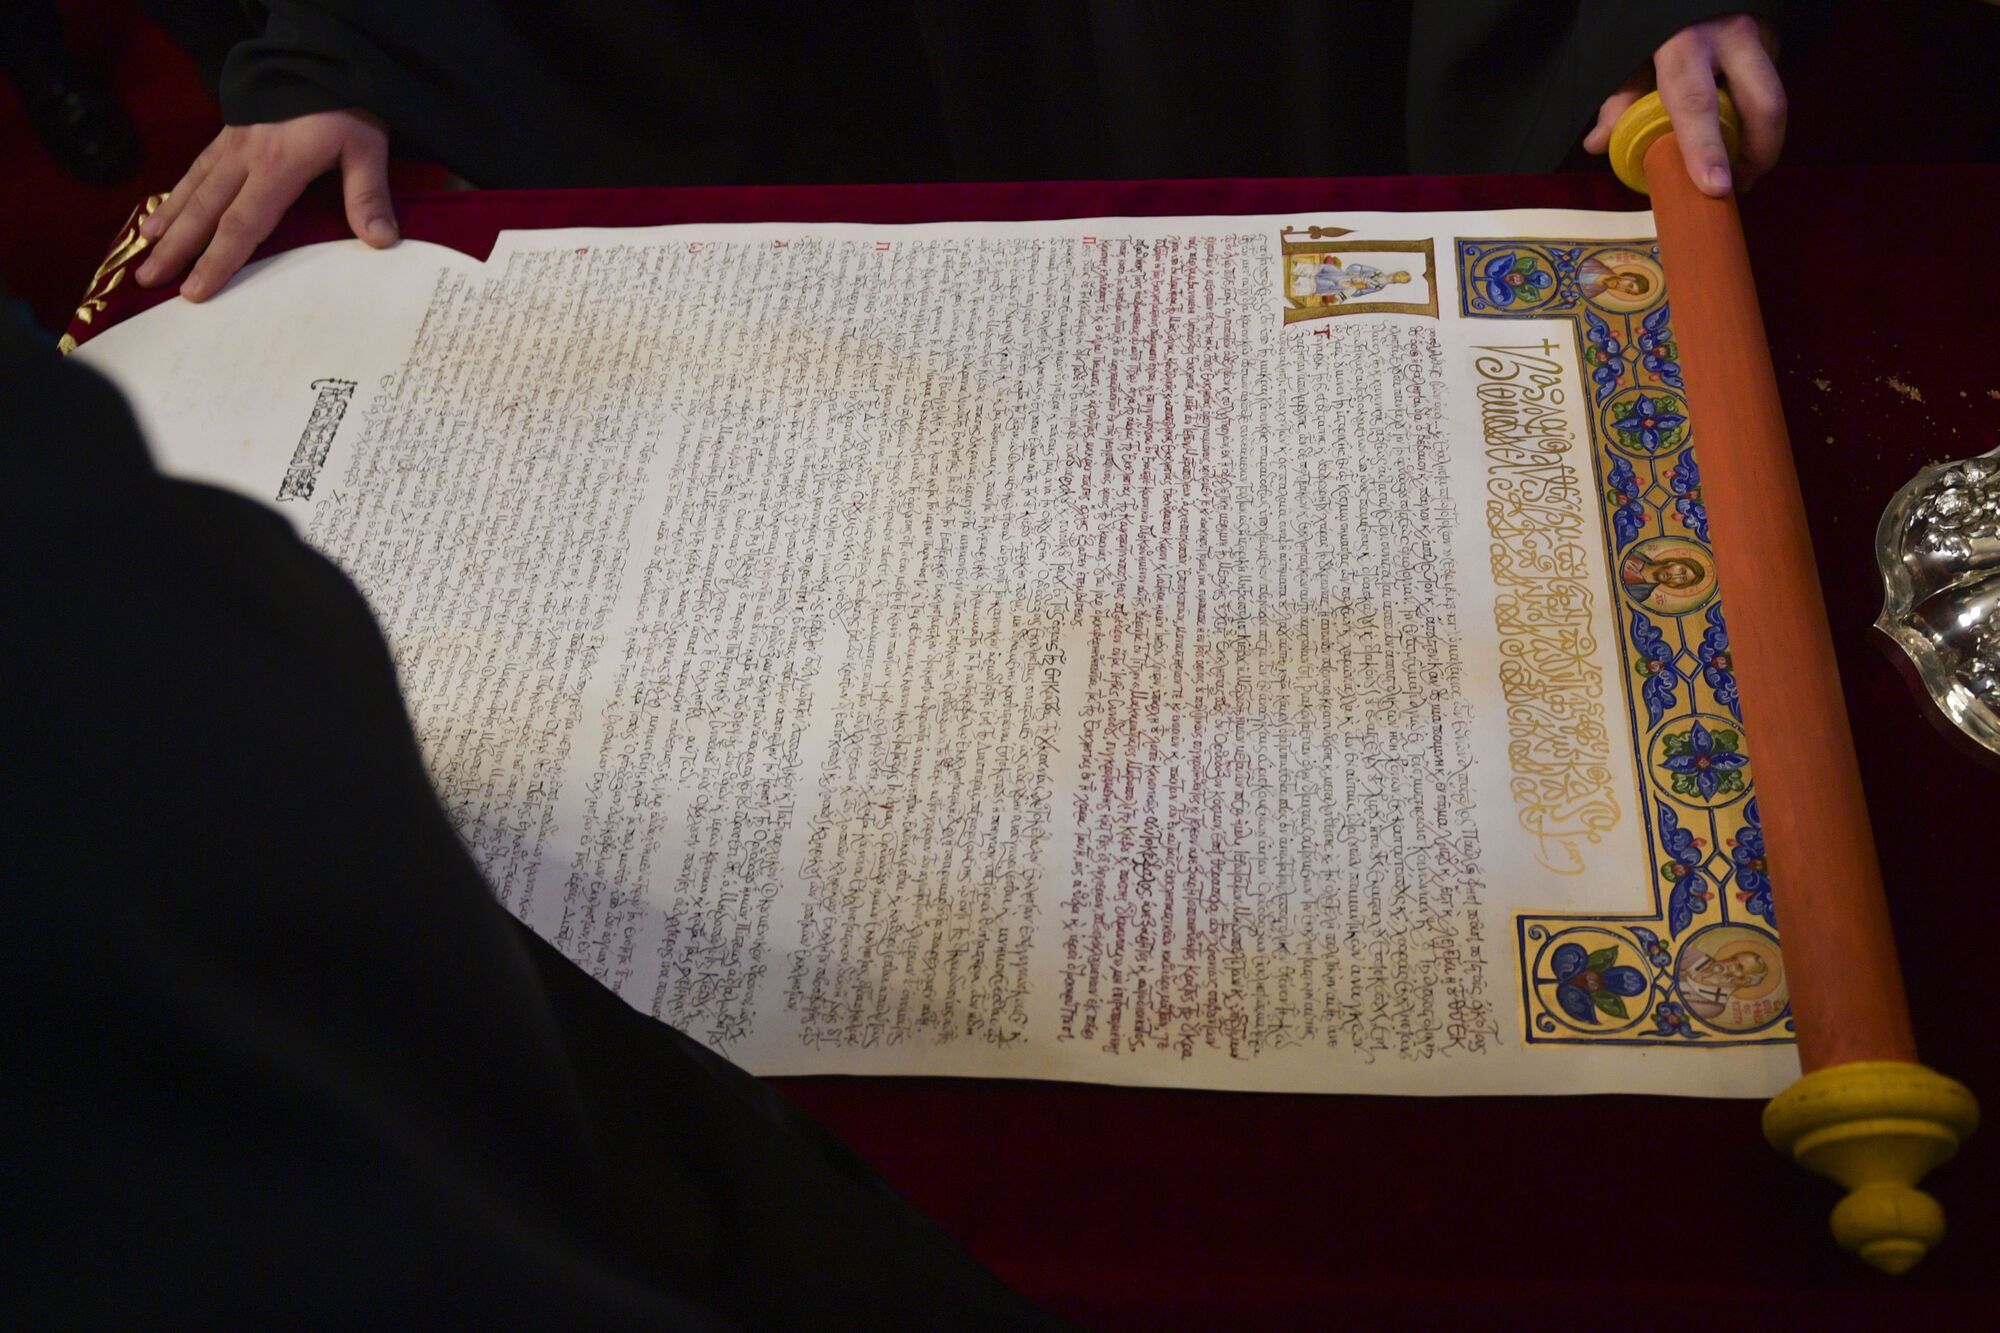 6 січня 2019 року Патріарх Константинопольський Варфоломій вручив Епіфанію Томос